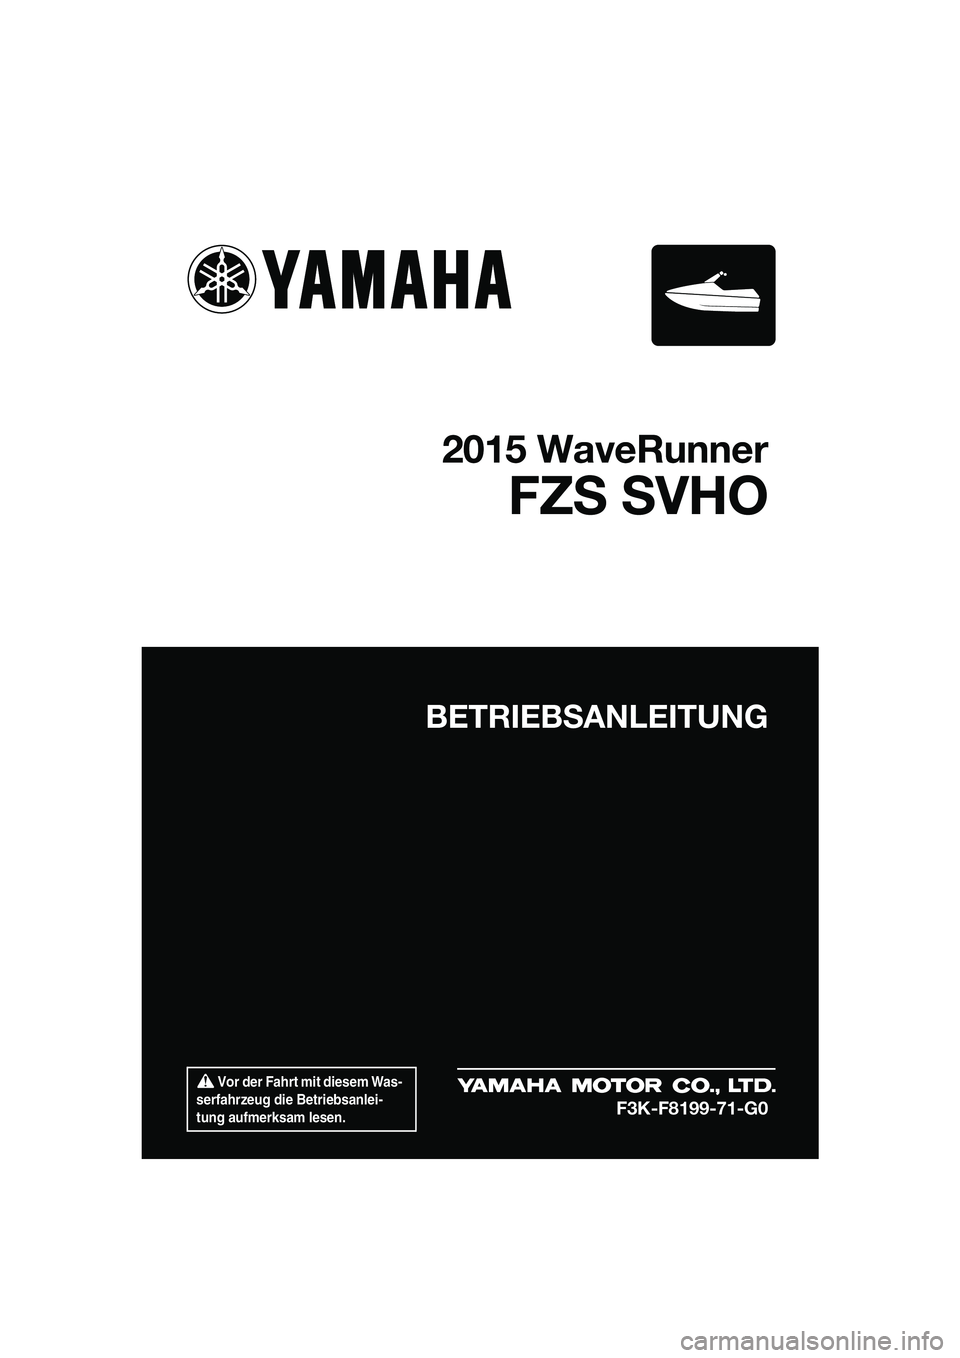 YAMAHA FZS SVHO 2015  Betriebsanleitungen (in German)  Vor der Fahrt mit diesem Was-
serfahrzeug die Betriebsanlei-
tung aufmerksam lesen.
BETRIEBSANLEITUNG
2015 WaveRunner
FZS SVHO
F3K-F8199-71-G0
UF3K71G0.book  Page 1  Tuesday, August 5, 2014  4:28 PM 